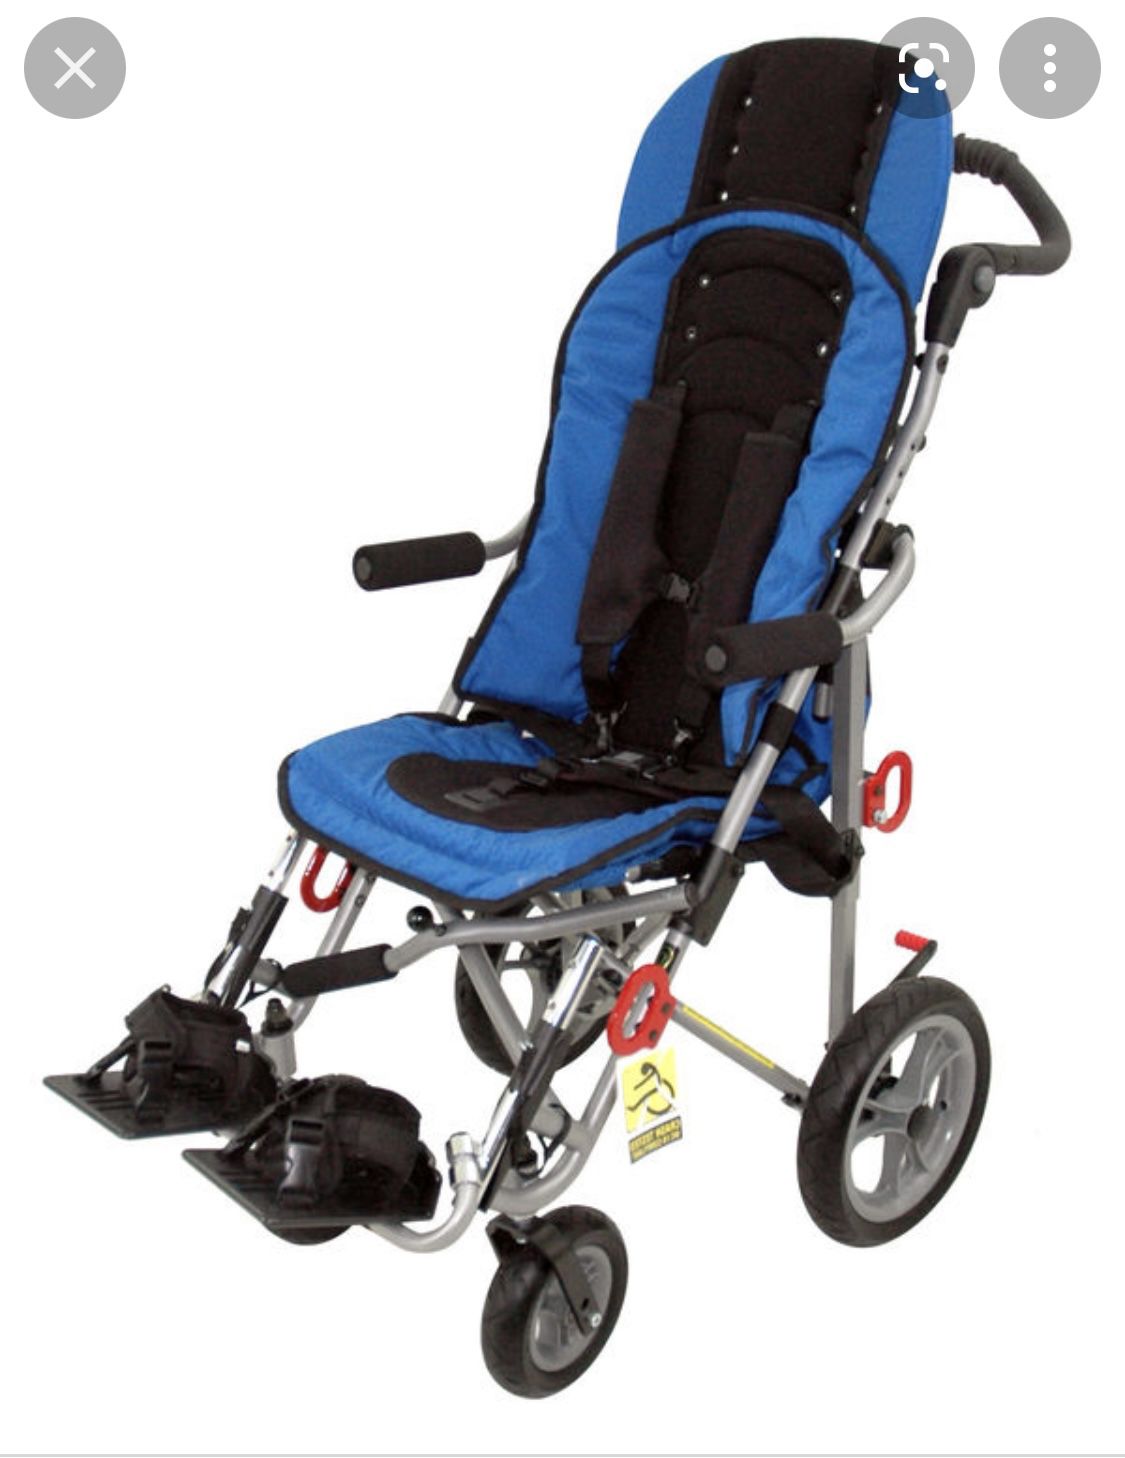 Convaid EZ Rider stroller 